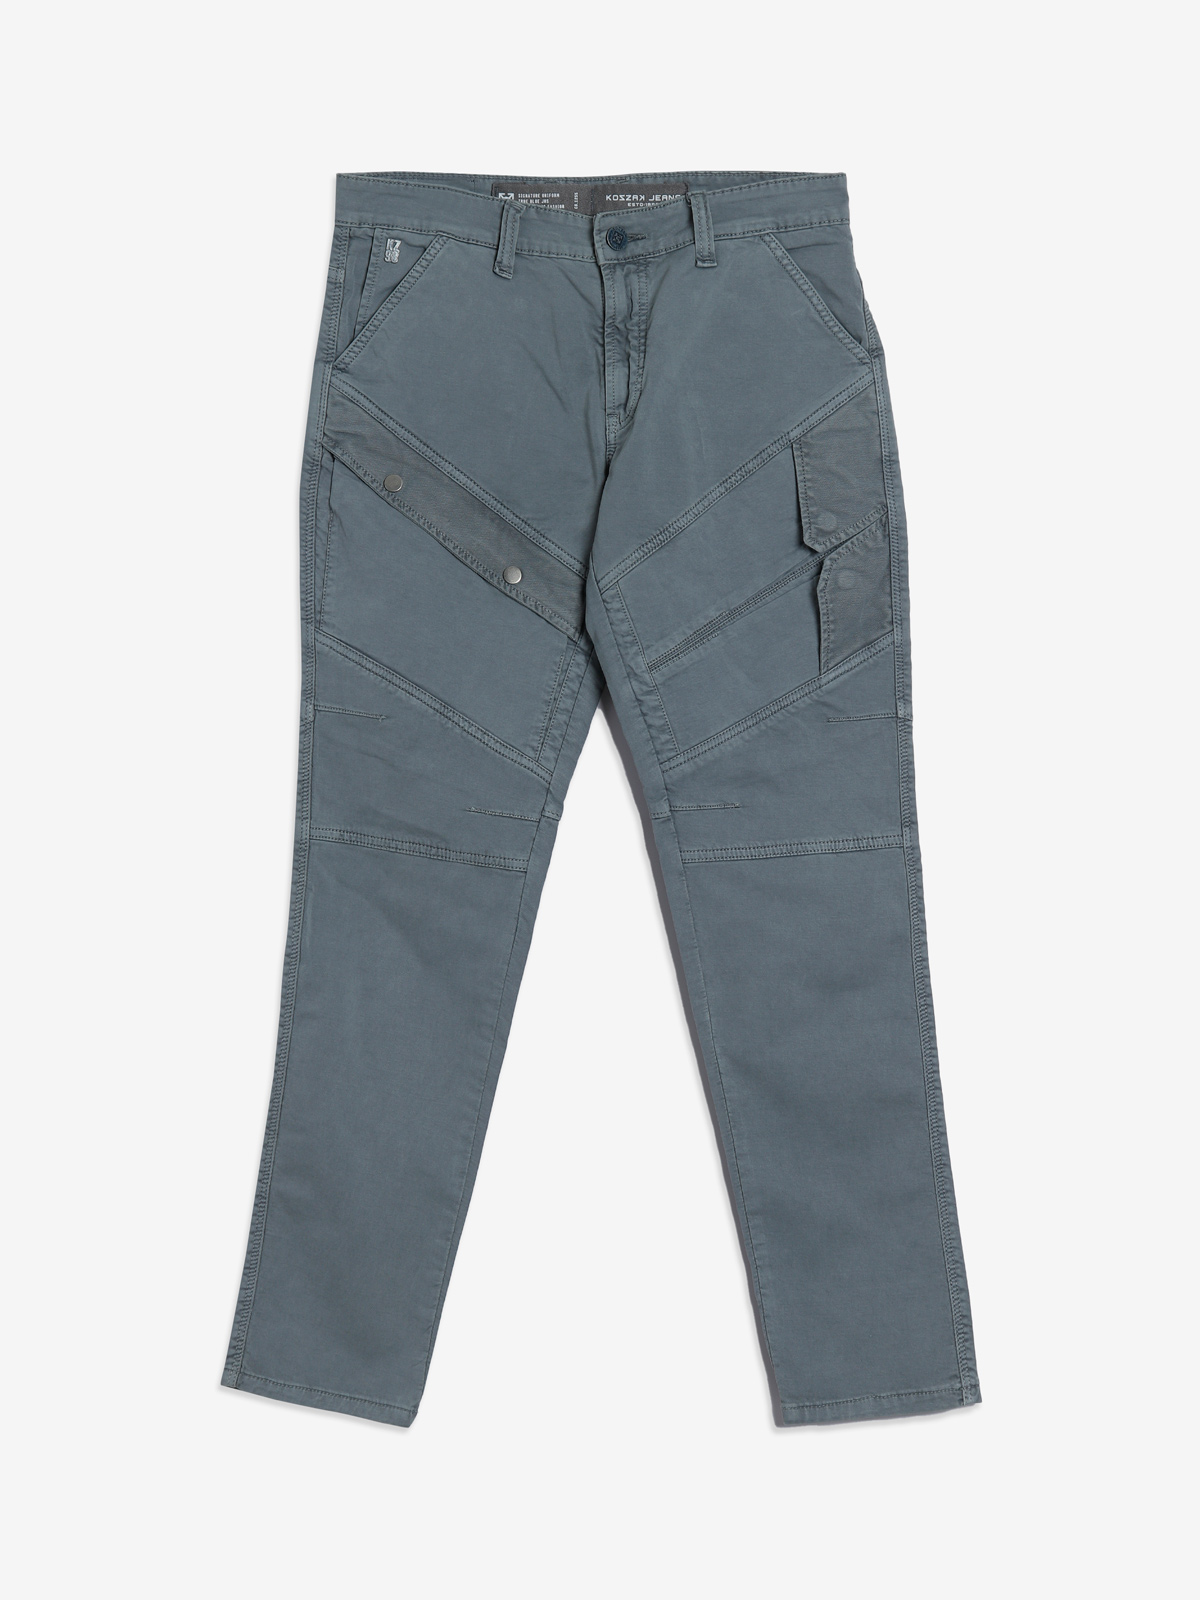 Kozzak grey cargo jeans - G3-MJE4725